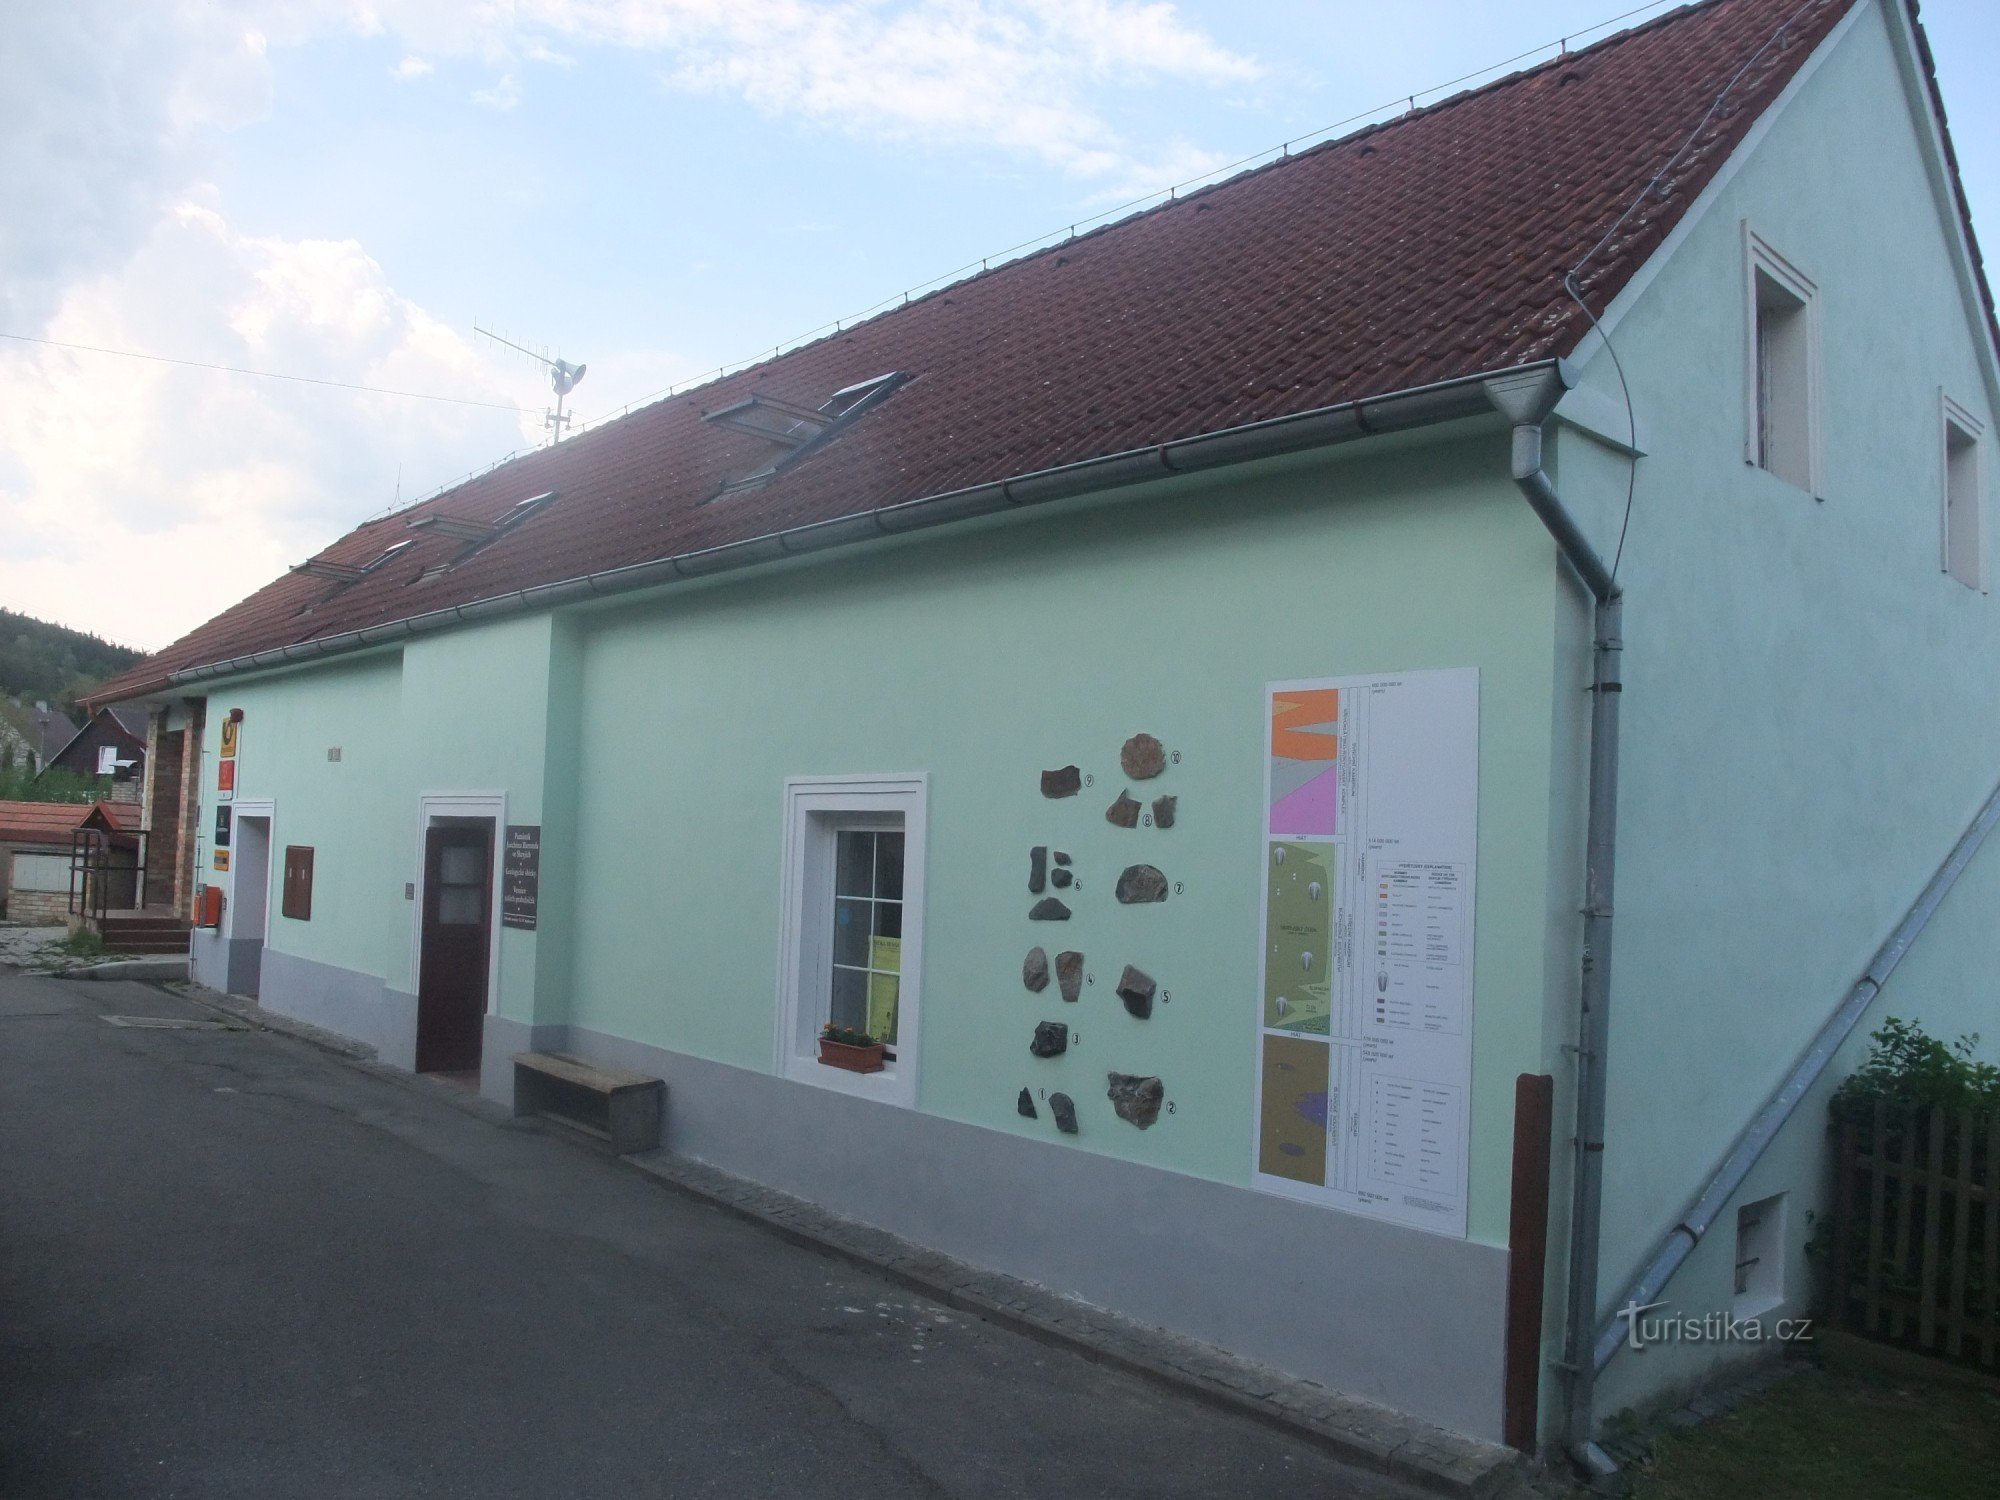 Muzeum J. Barranda w Skryje